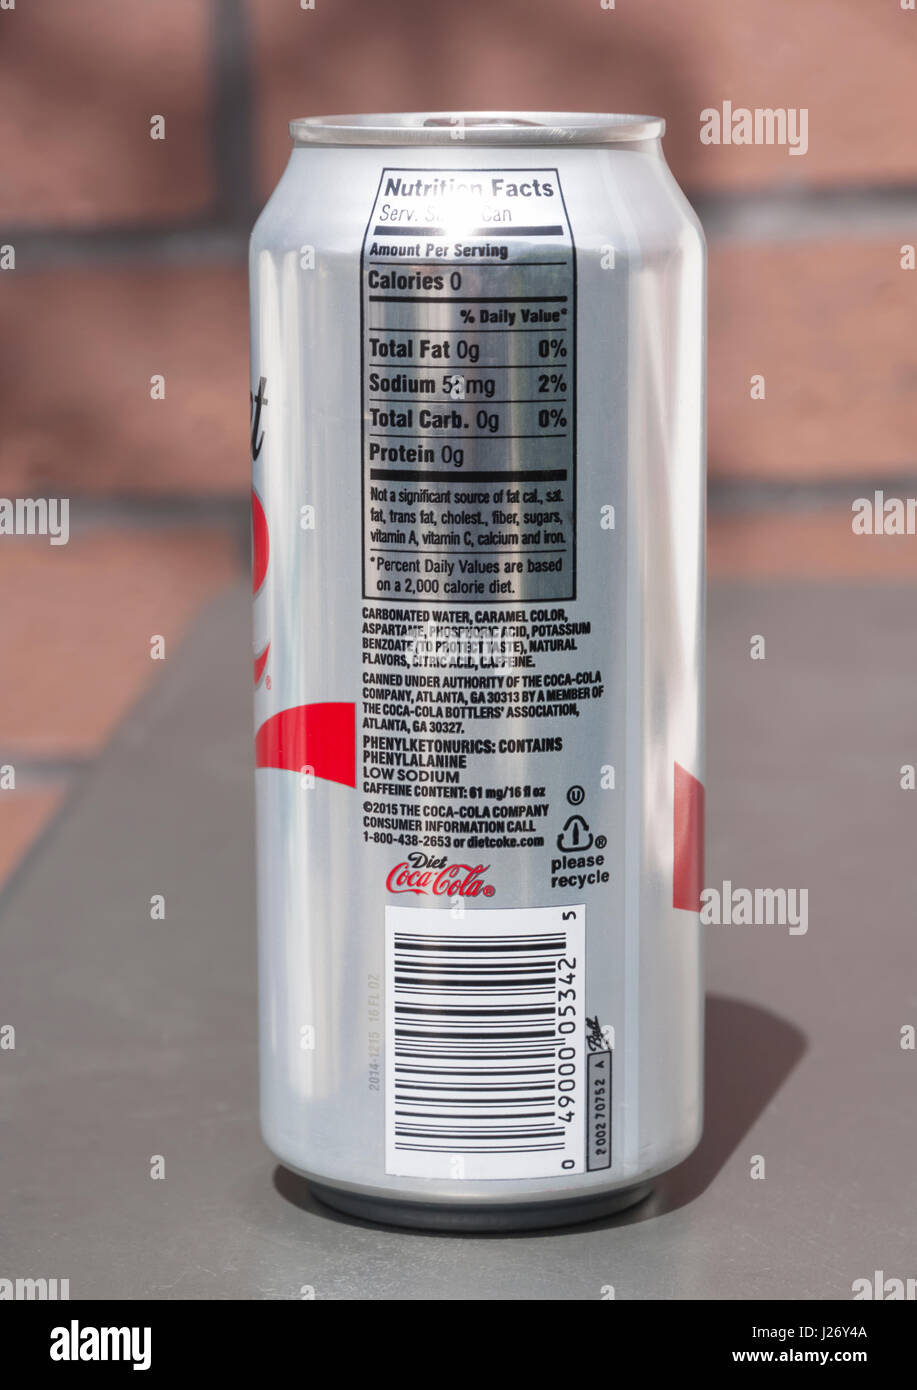 Lata de Diet Coke mostrando los ingredientes enumerados incluido el controversial fenilalanina y el aspartame. Foto de stock